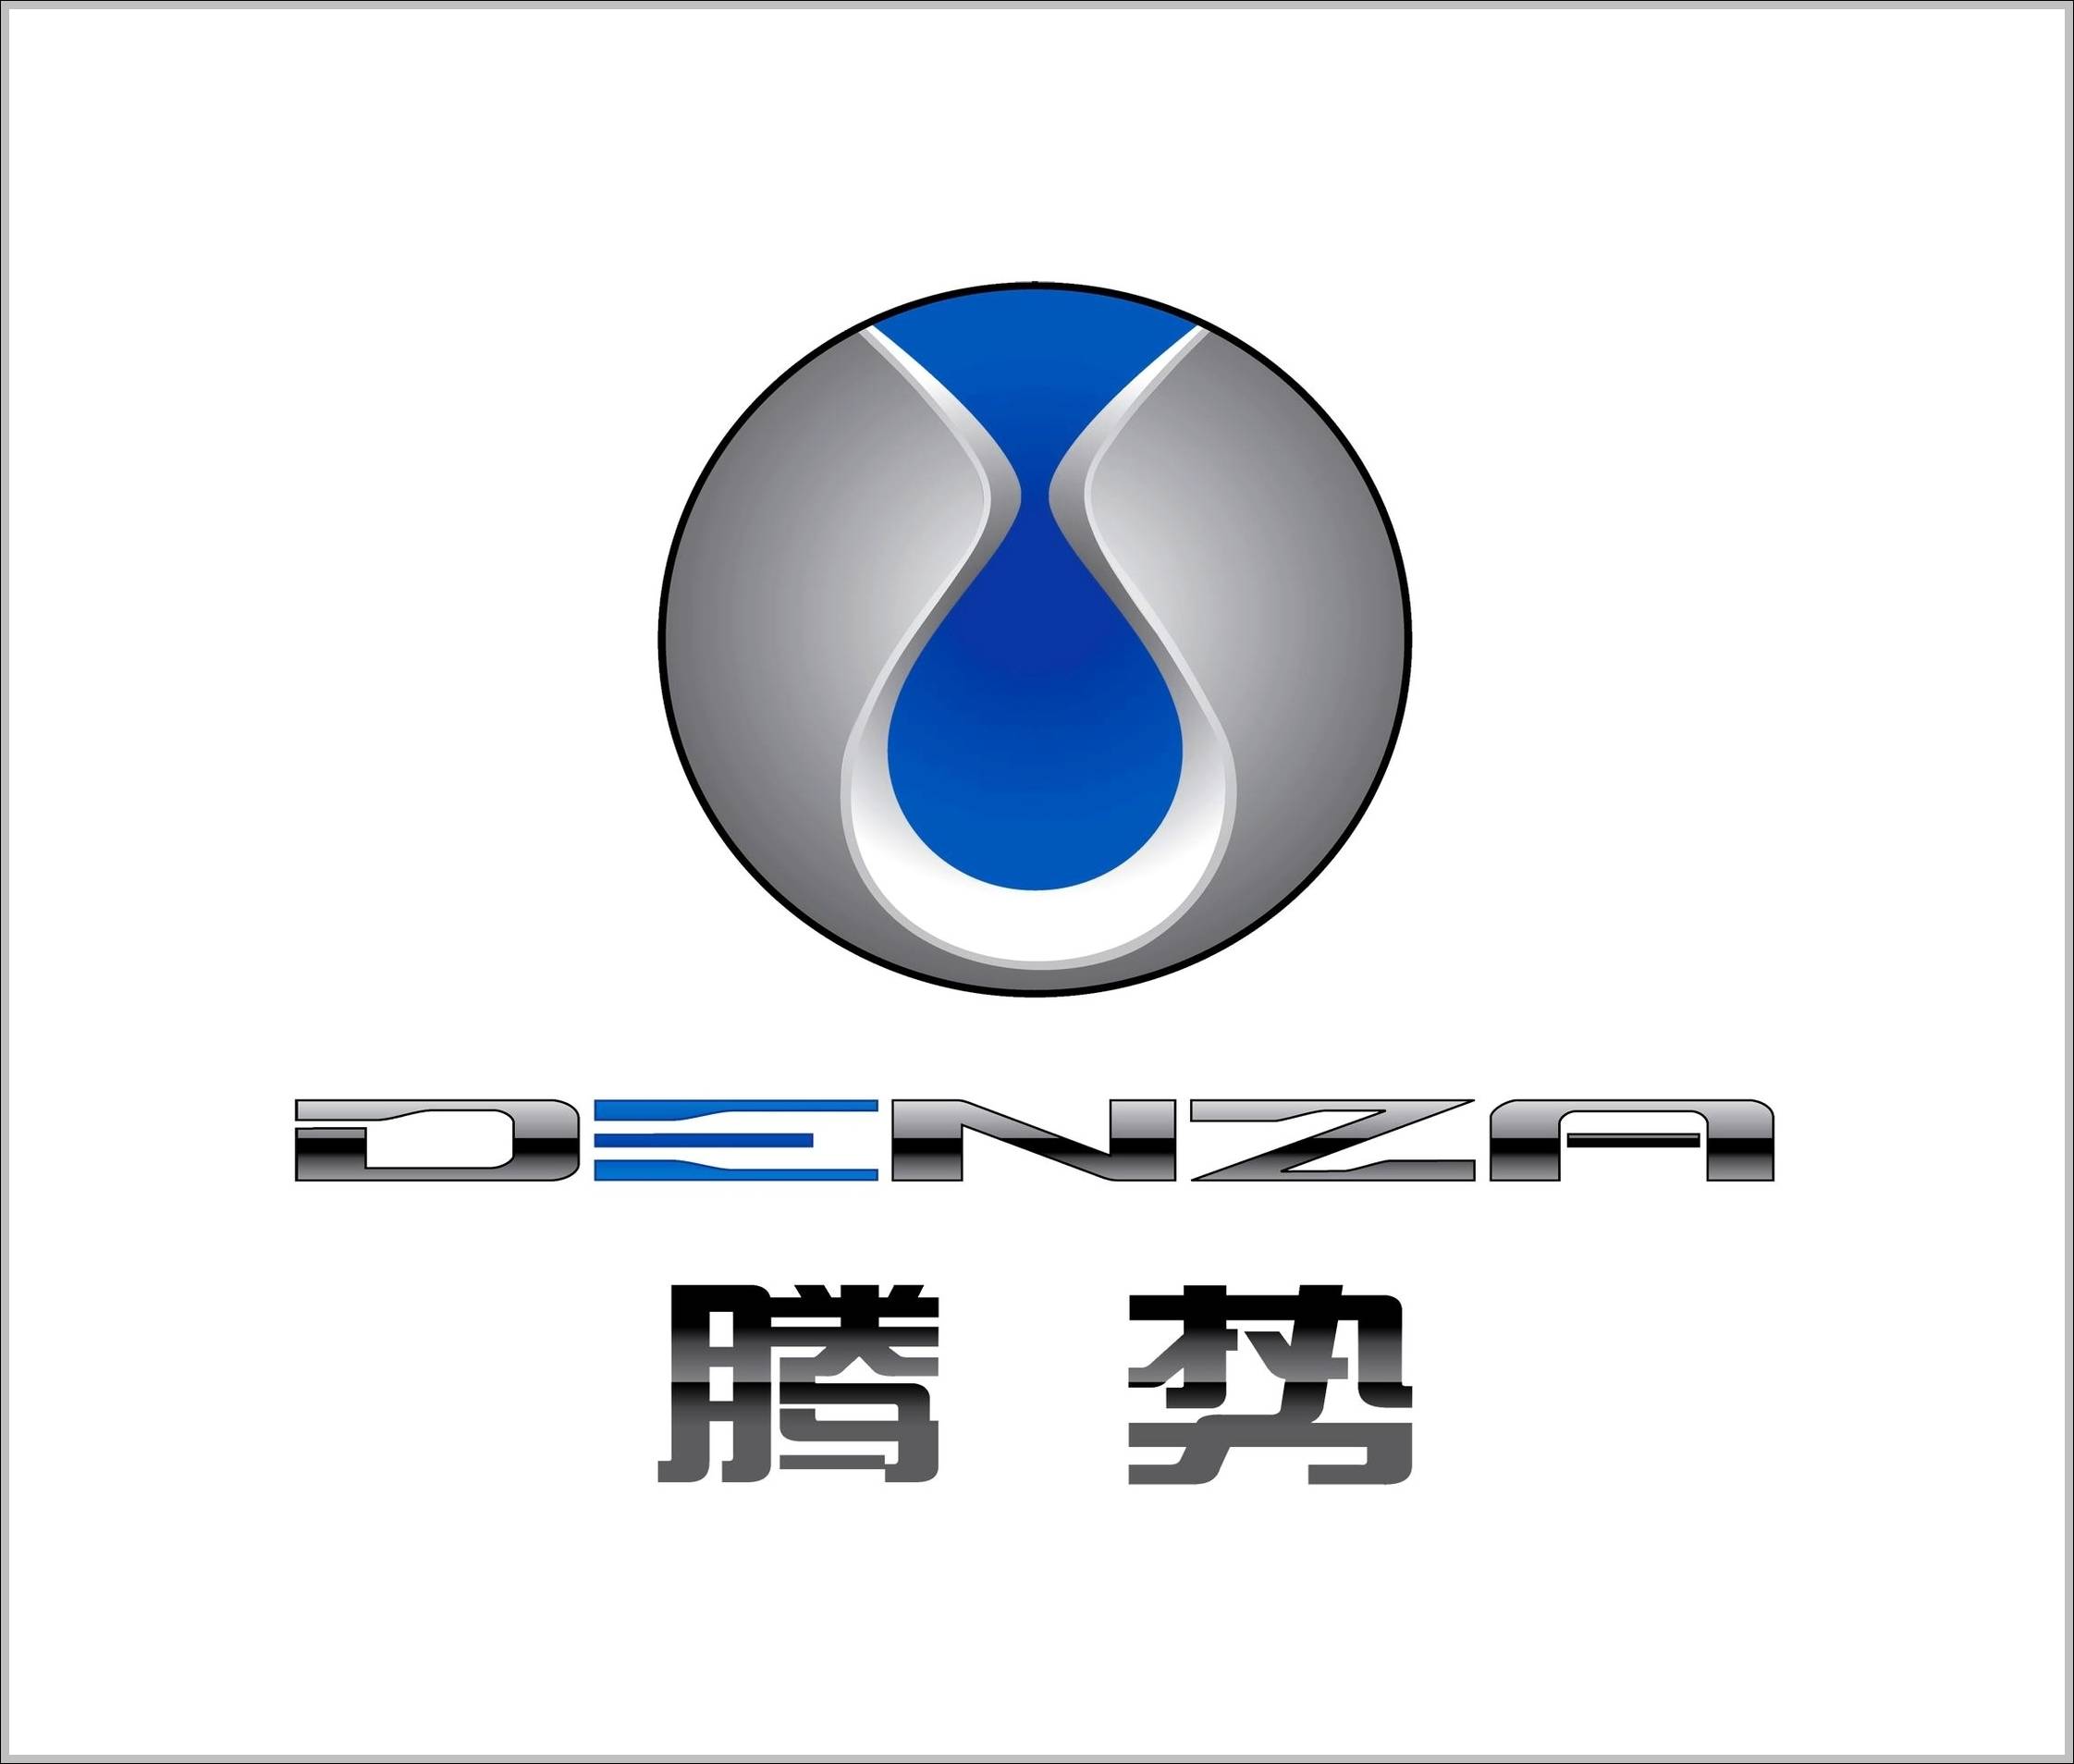 Denza logo original